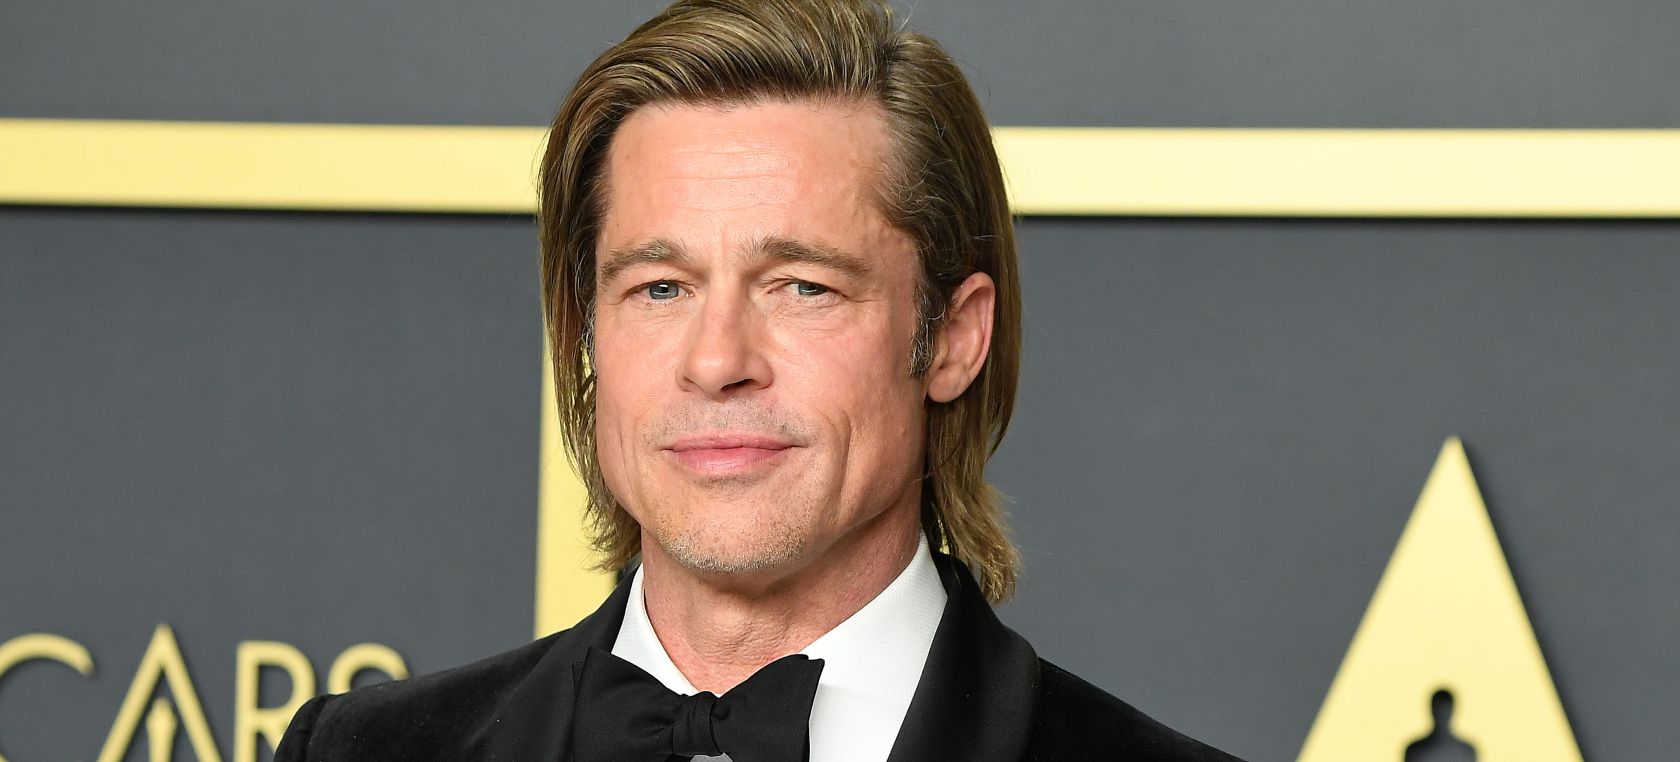 Brad Pitt habla ya de retirarse del cine: “Me veo en mi última etapa”